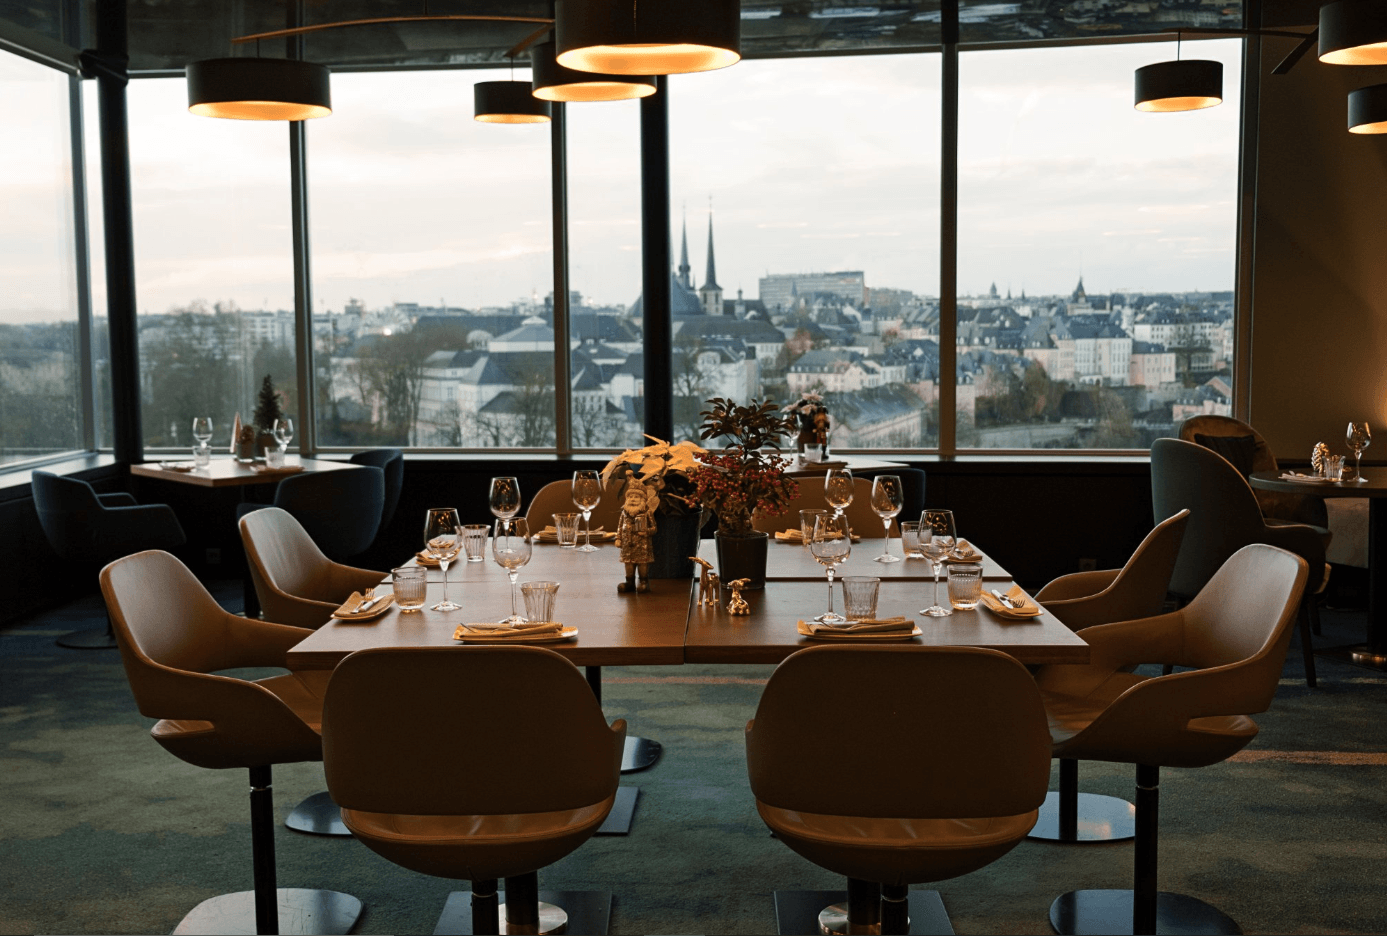 Mu Luxembourg — красивый ресторан, расположенный в отеле в центре города. Фото с сайта TripAdvisor, опубликованного самим руководством ресторана.